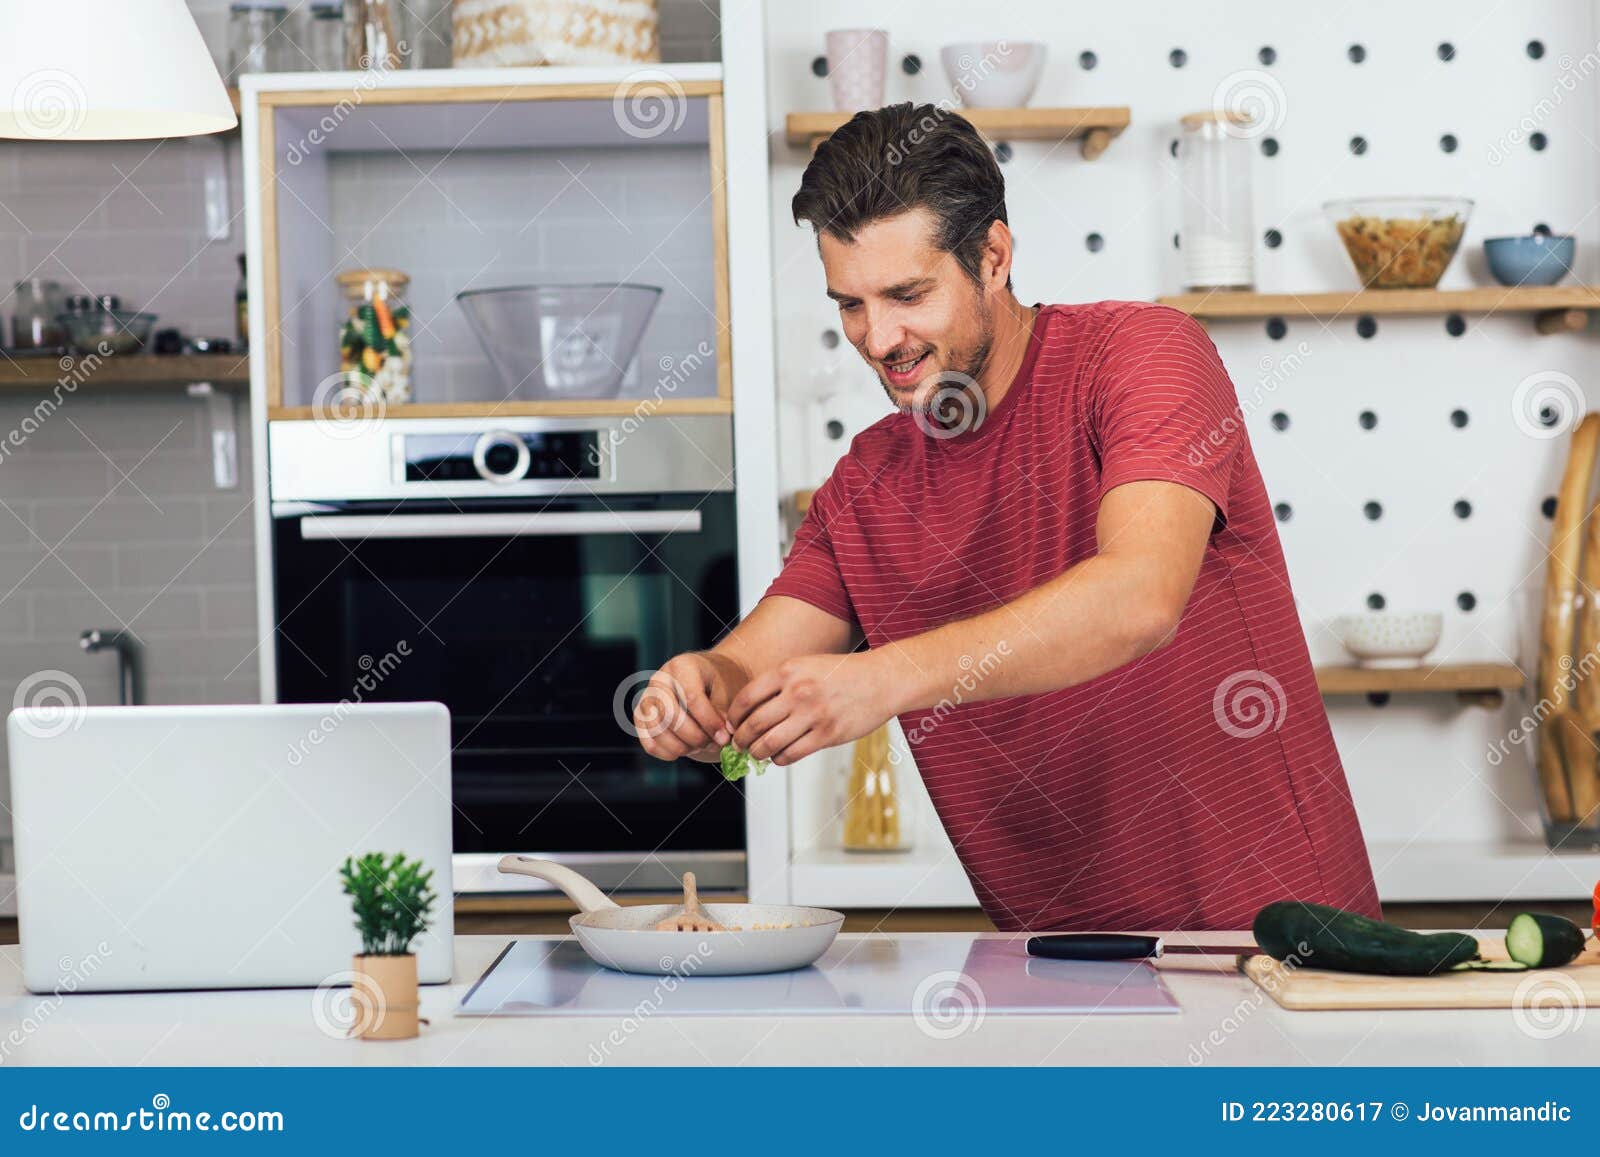 男人做饭素材-男人做饭图片-男人做饭素材图片下载-觅知网